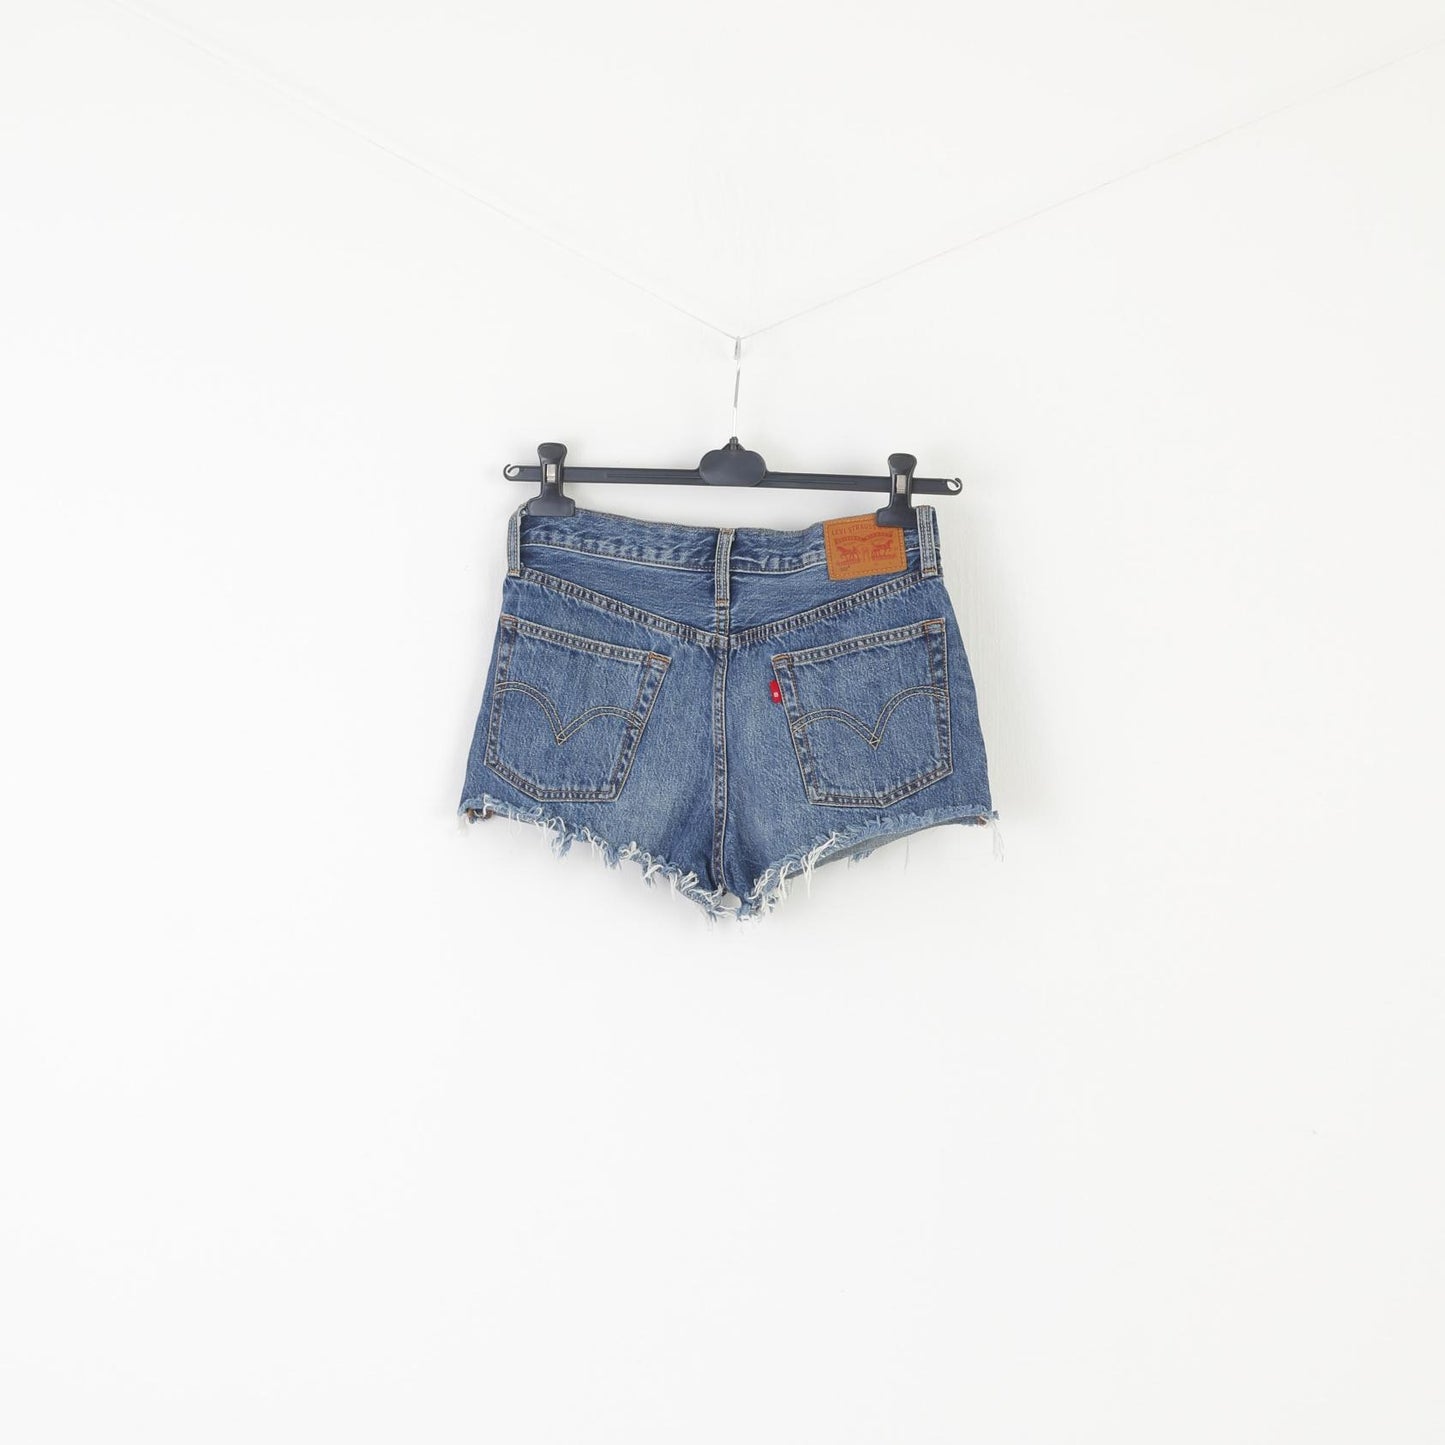 Levi's 501 Femme 27 Short Bleu Jeans Denim Poignets Effilochés Vintage Pantalon Chaud